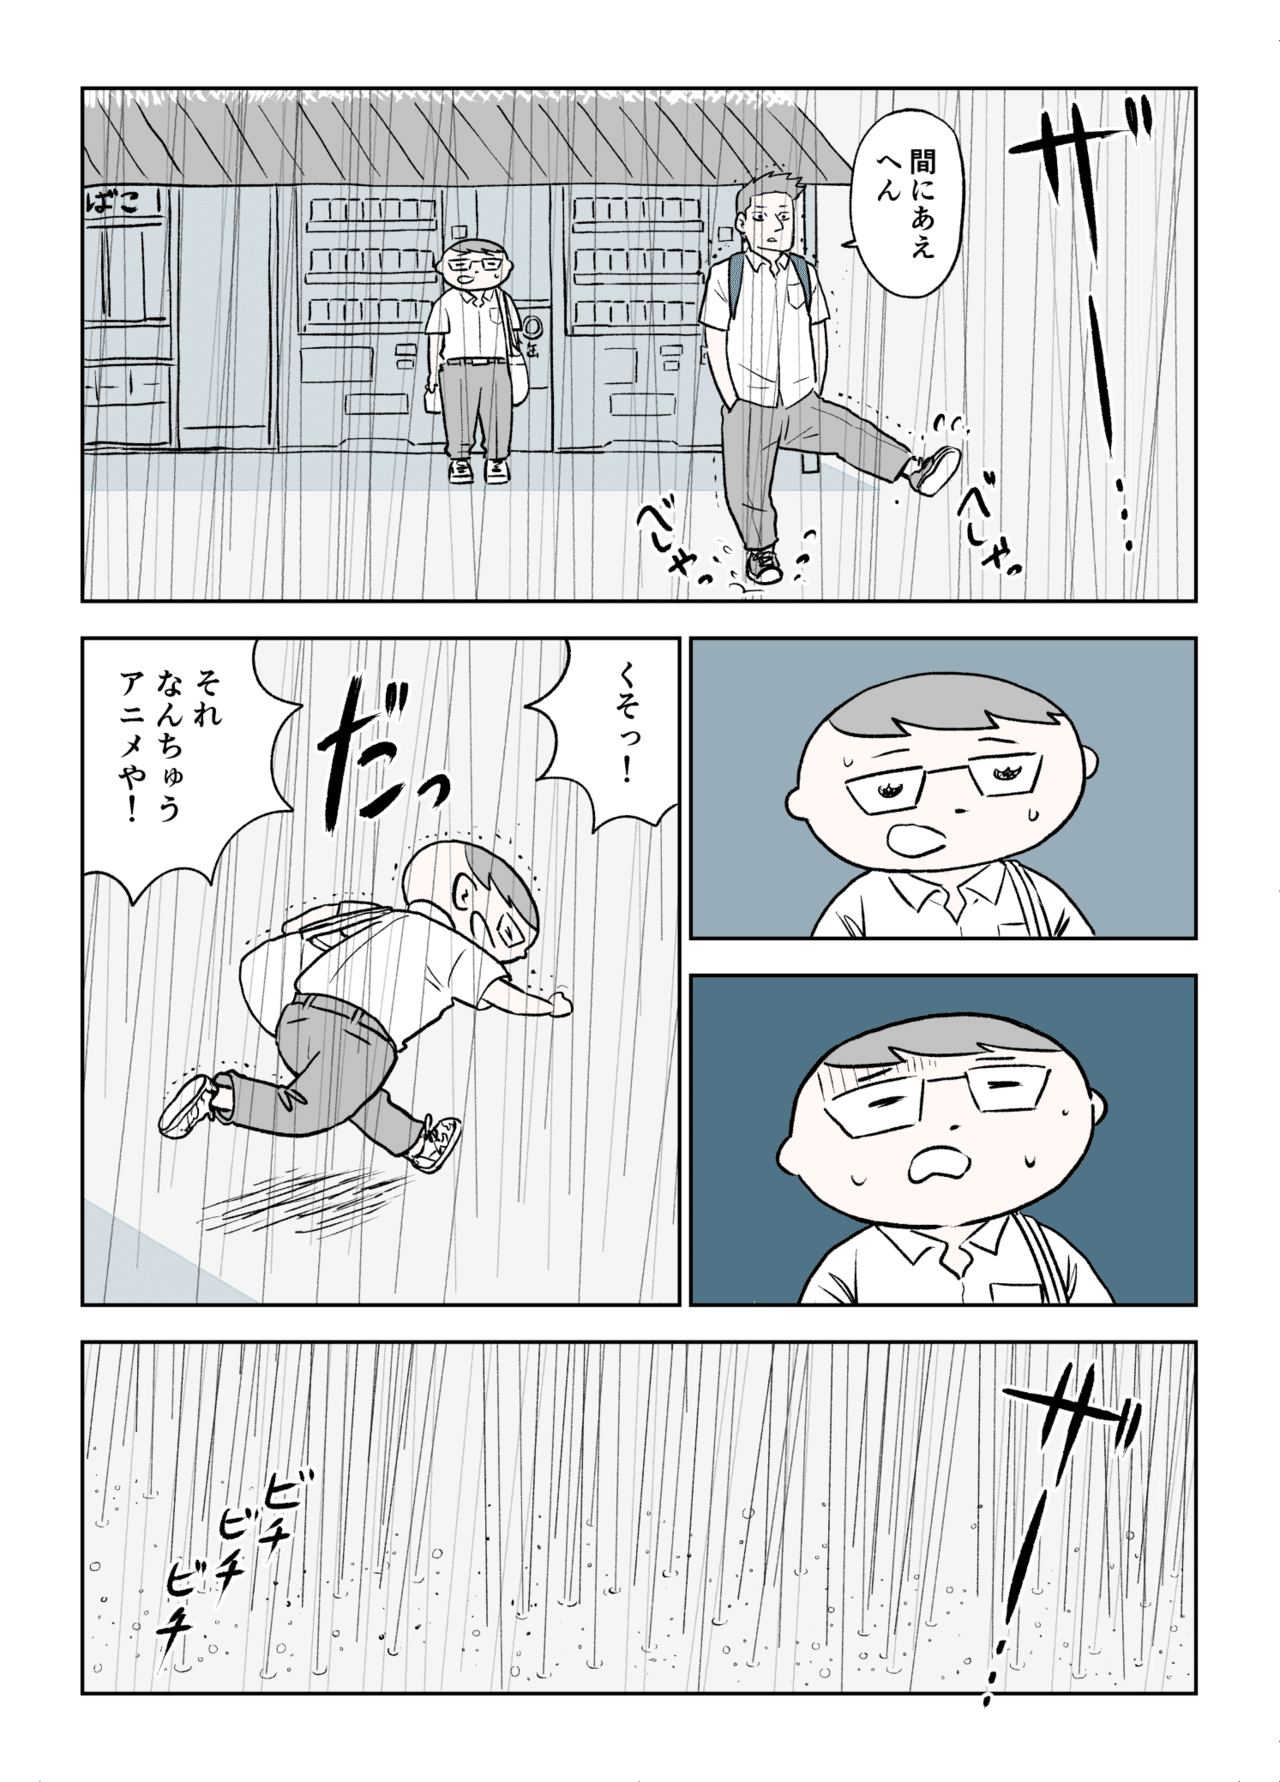 コミック4_003